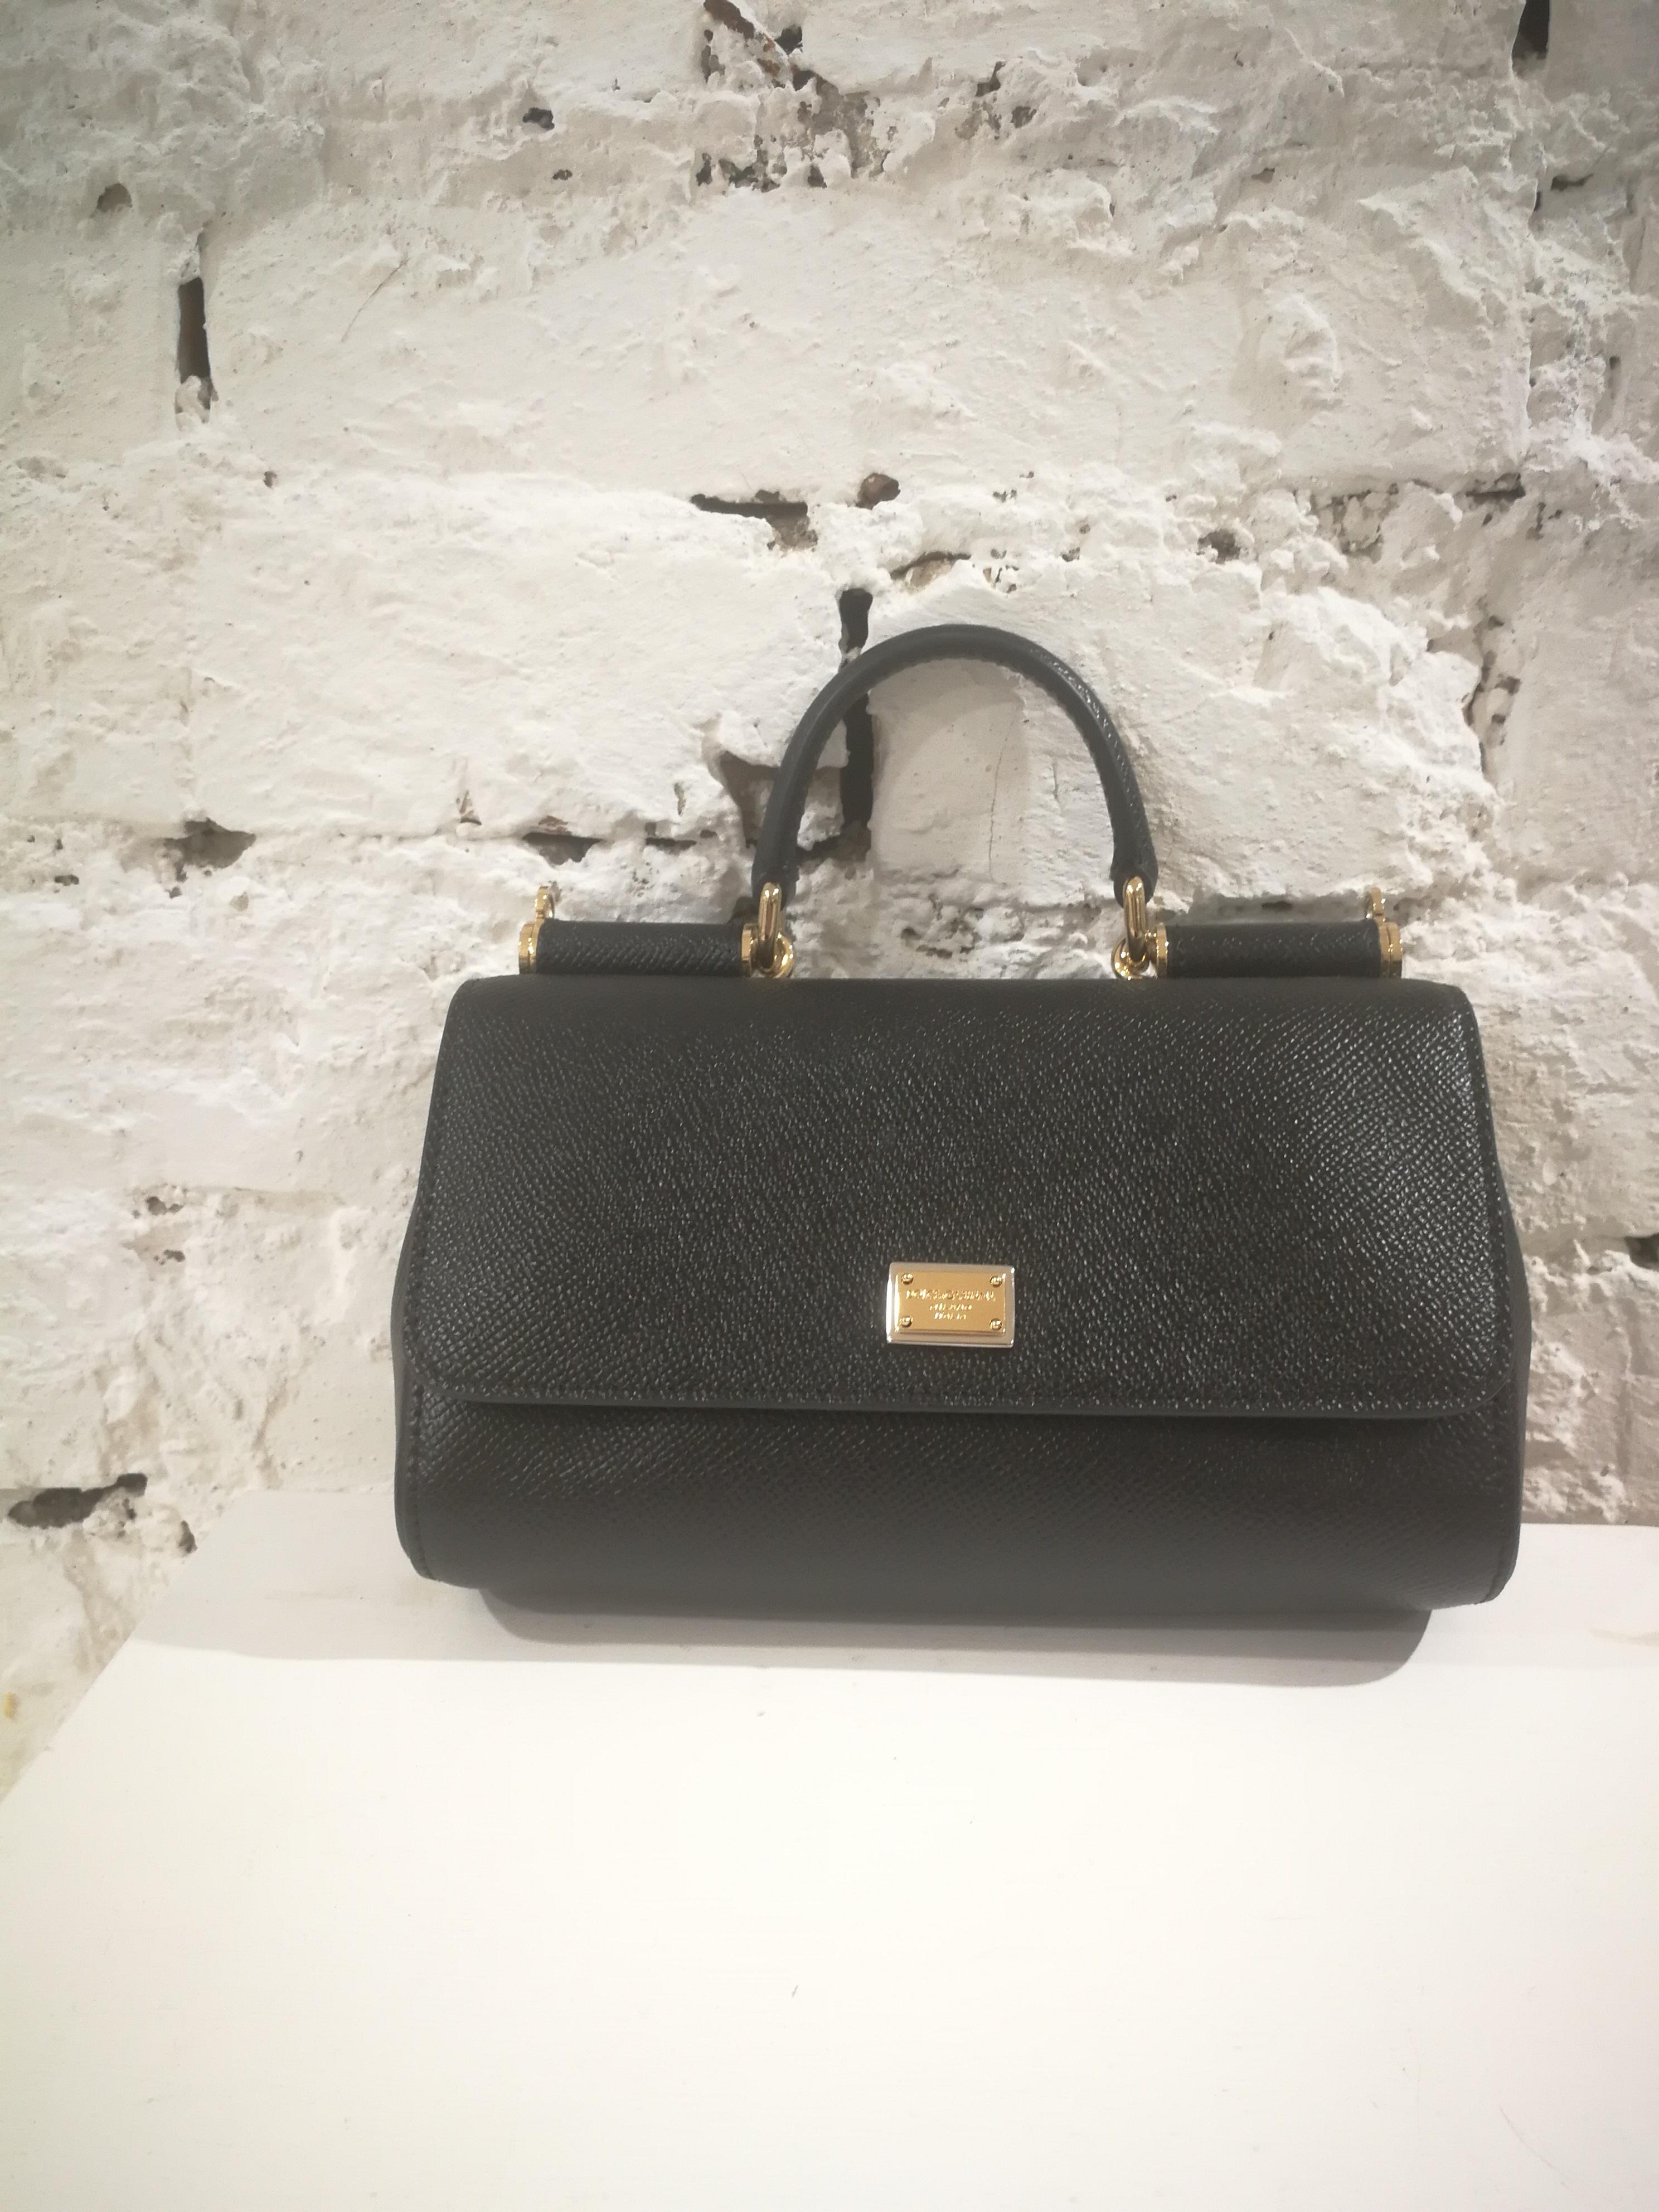 Dolce & Gabbana Black Leather Shoulder Bag NWOT 5